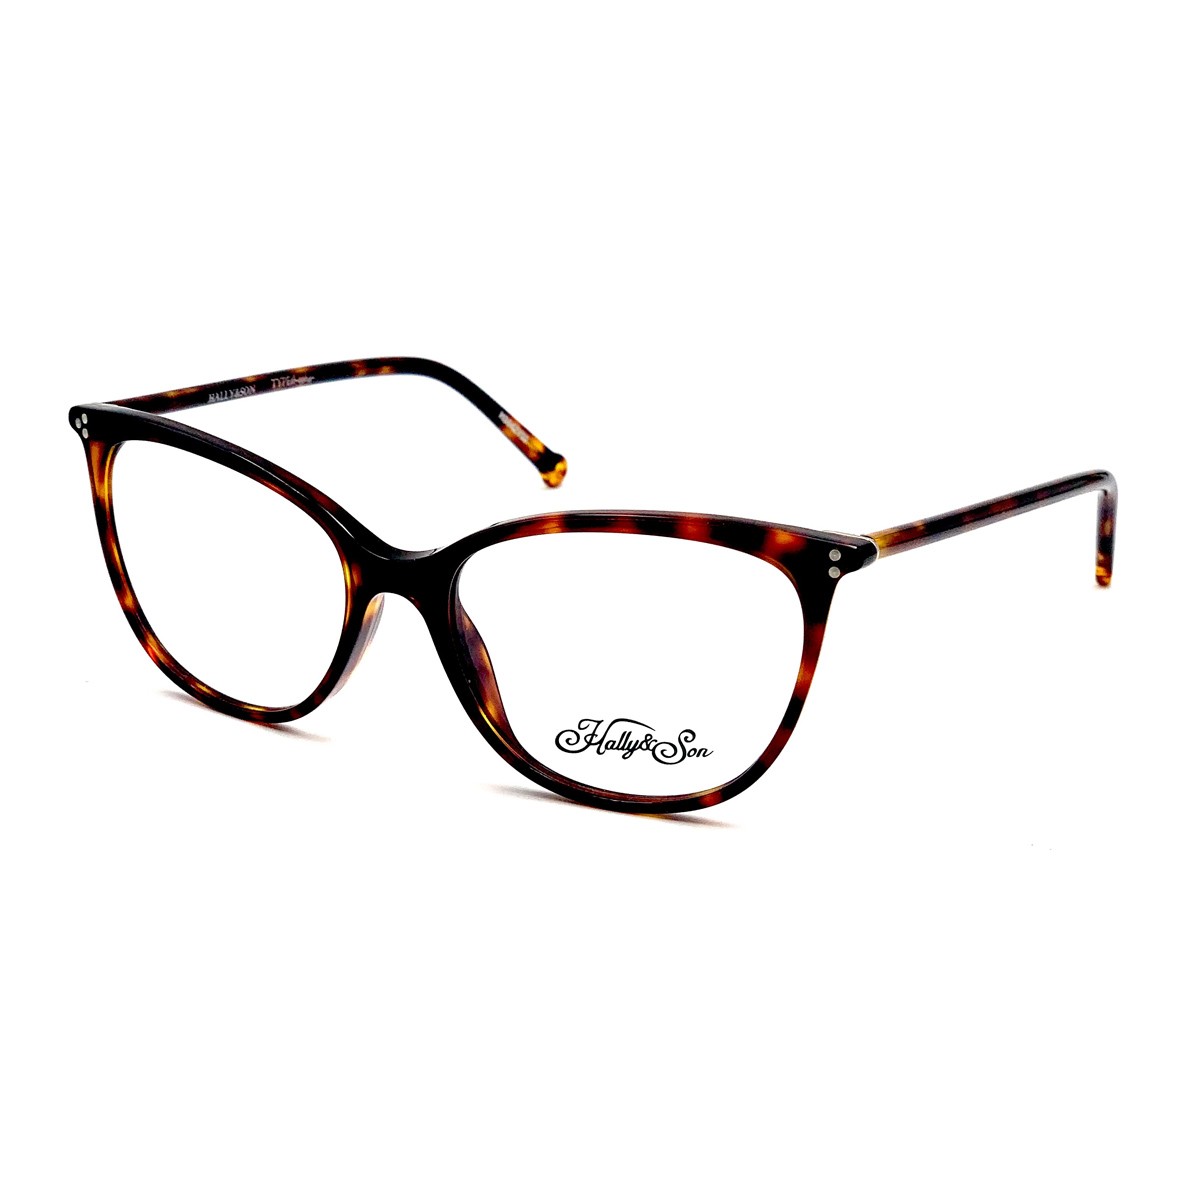 KIT OPTICAL-SUN HS64 | Women's eyeglasses